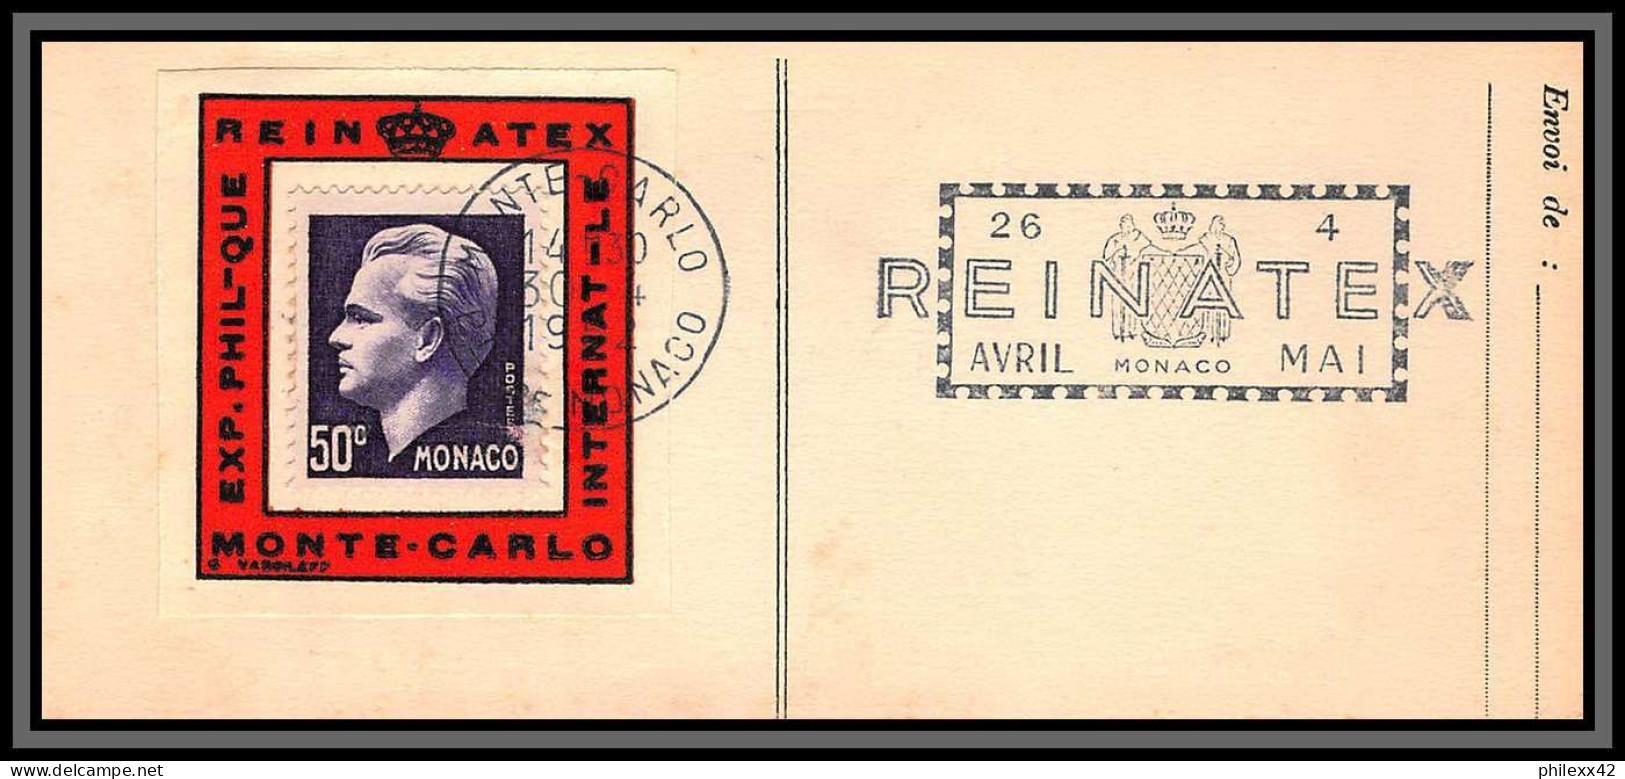 74926 (2) REINATEX 1952 joli lot collection vignette porte timbre stamp holder lettre cover Monaco france italia